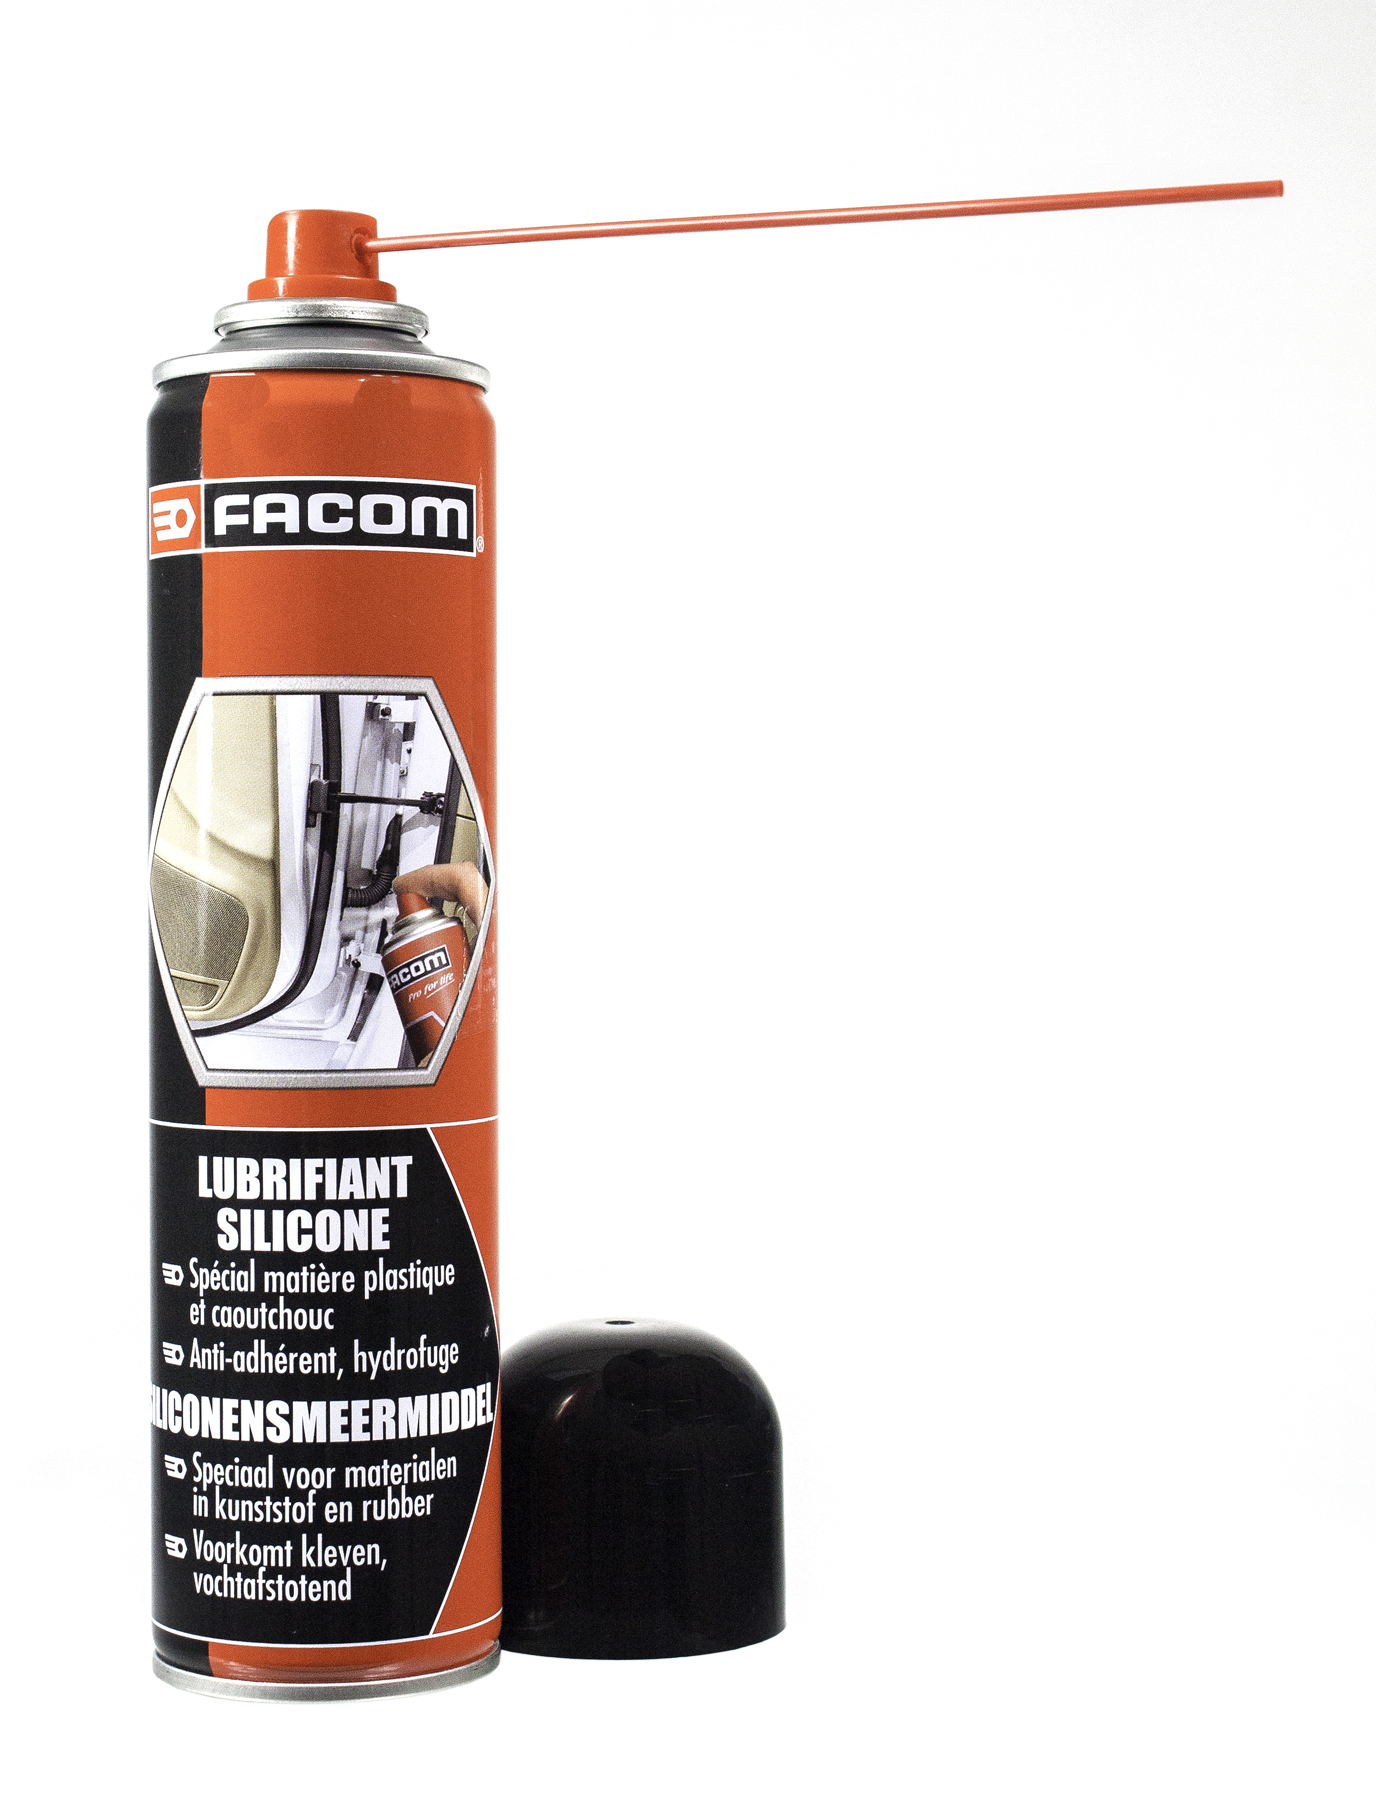 FACOM lubrifiant silicone 300ml - Etape Auto